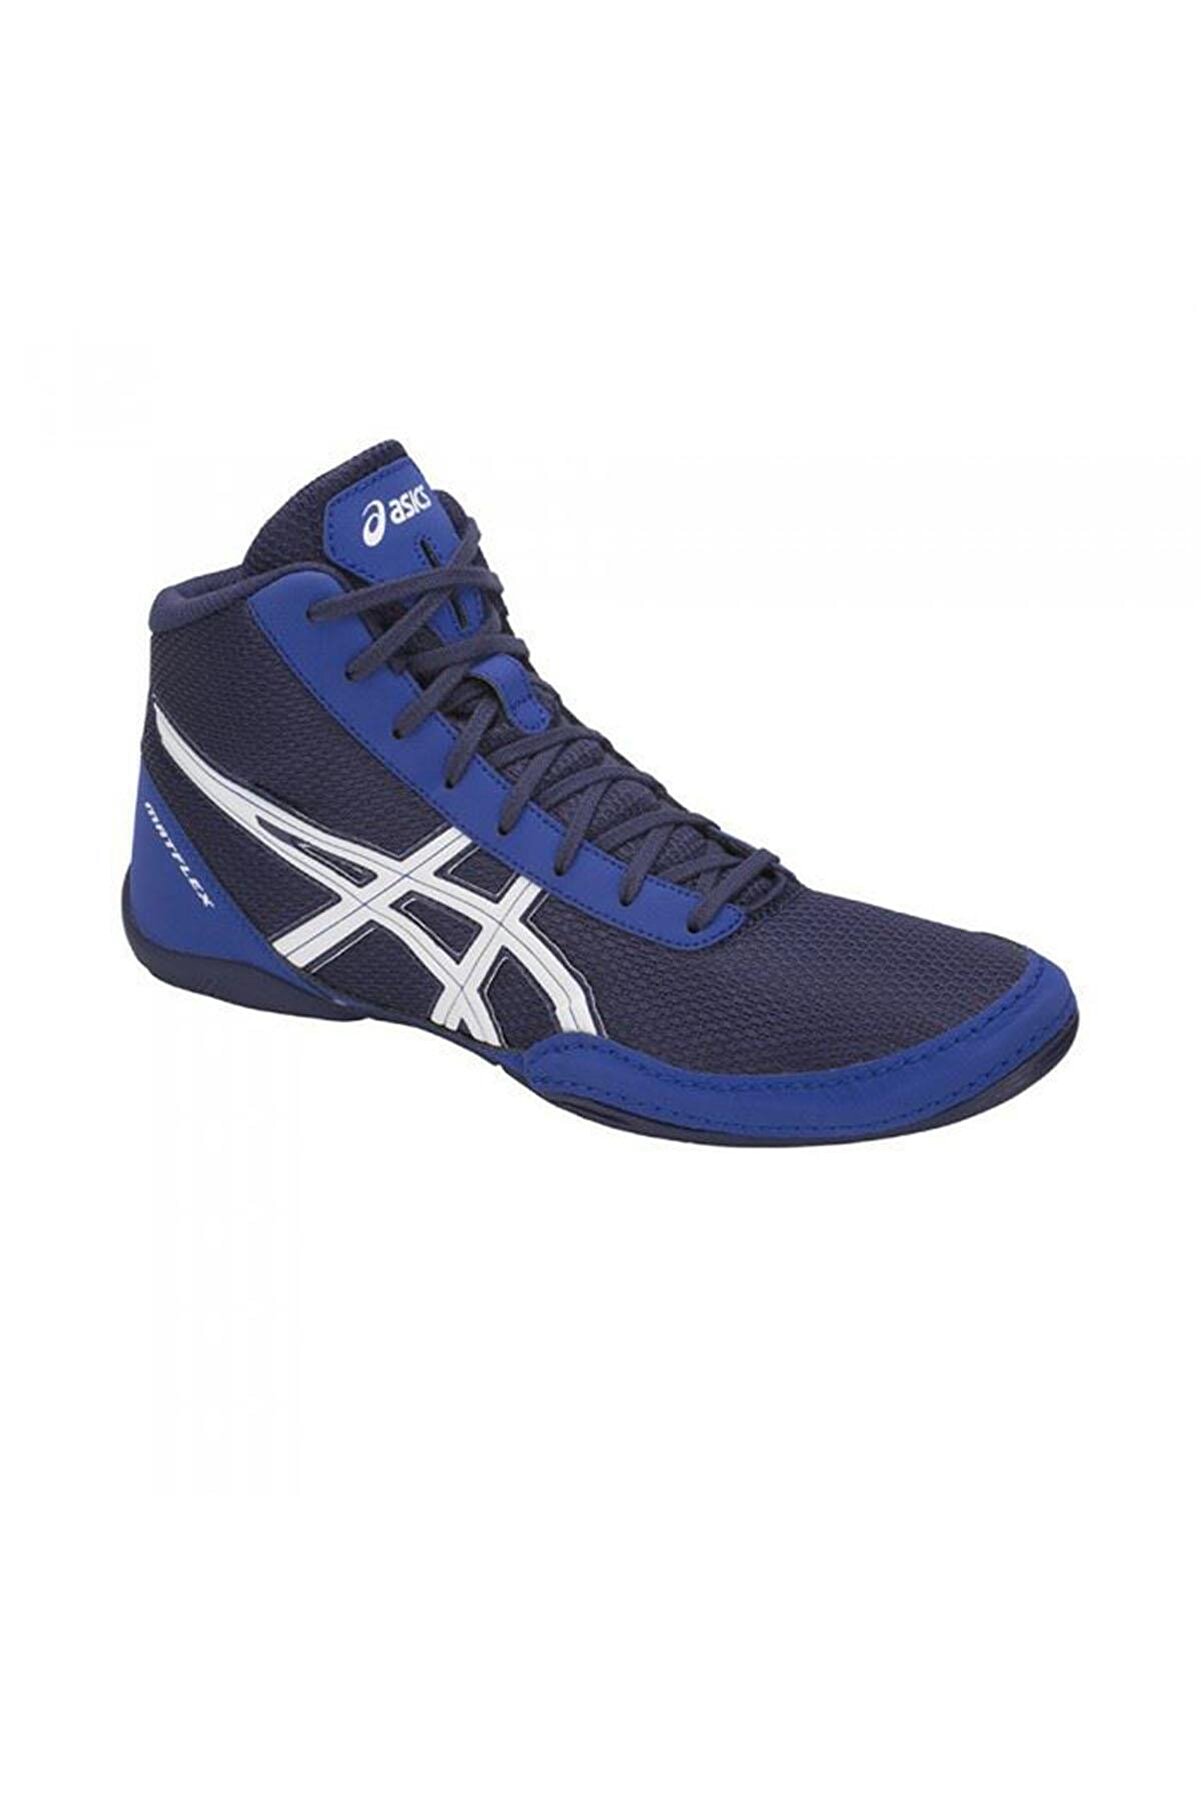 Asics Matflex 5 Çocuk Güreş Ayakkabısı C545n Mavi Mavi-35